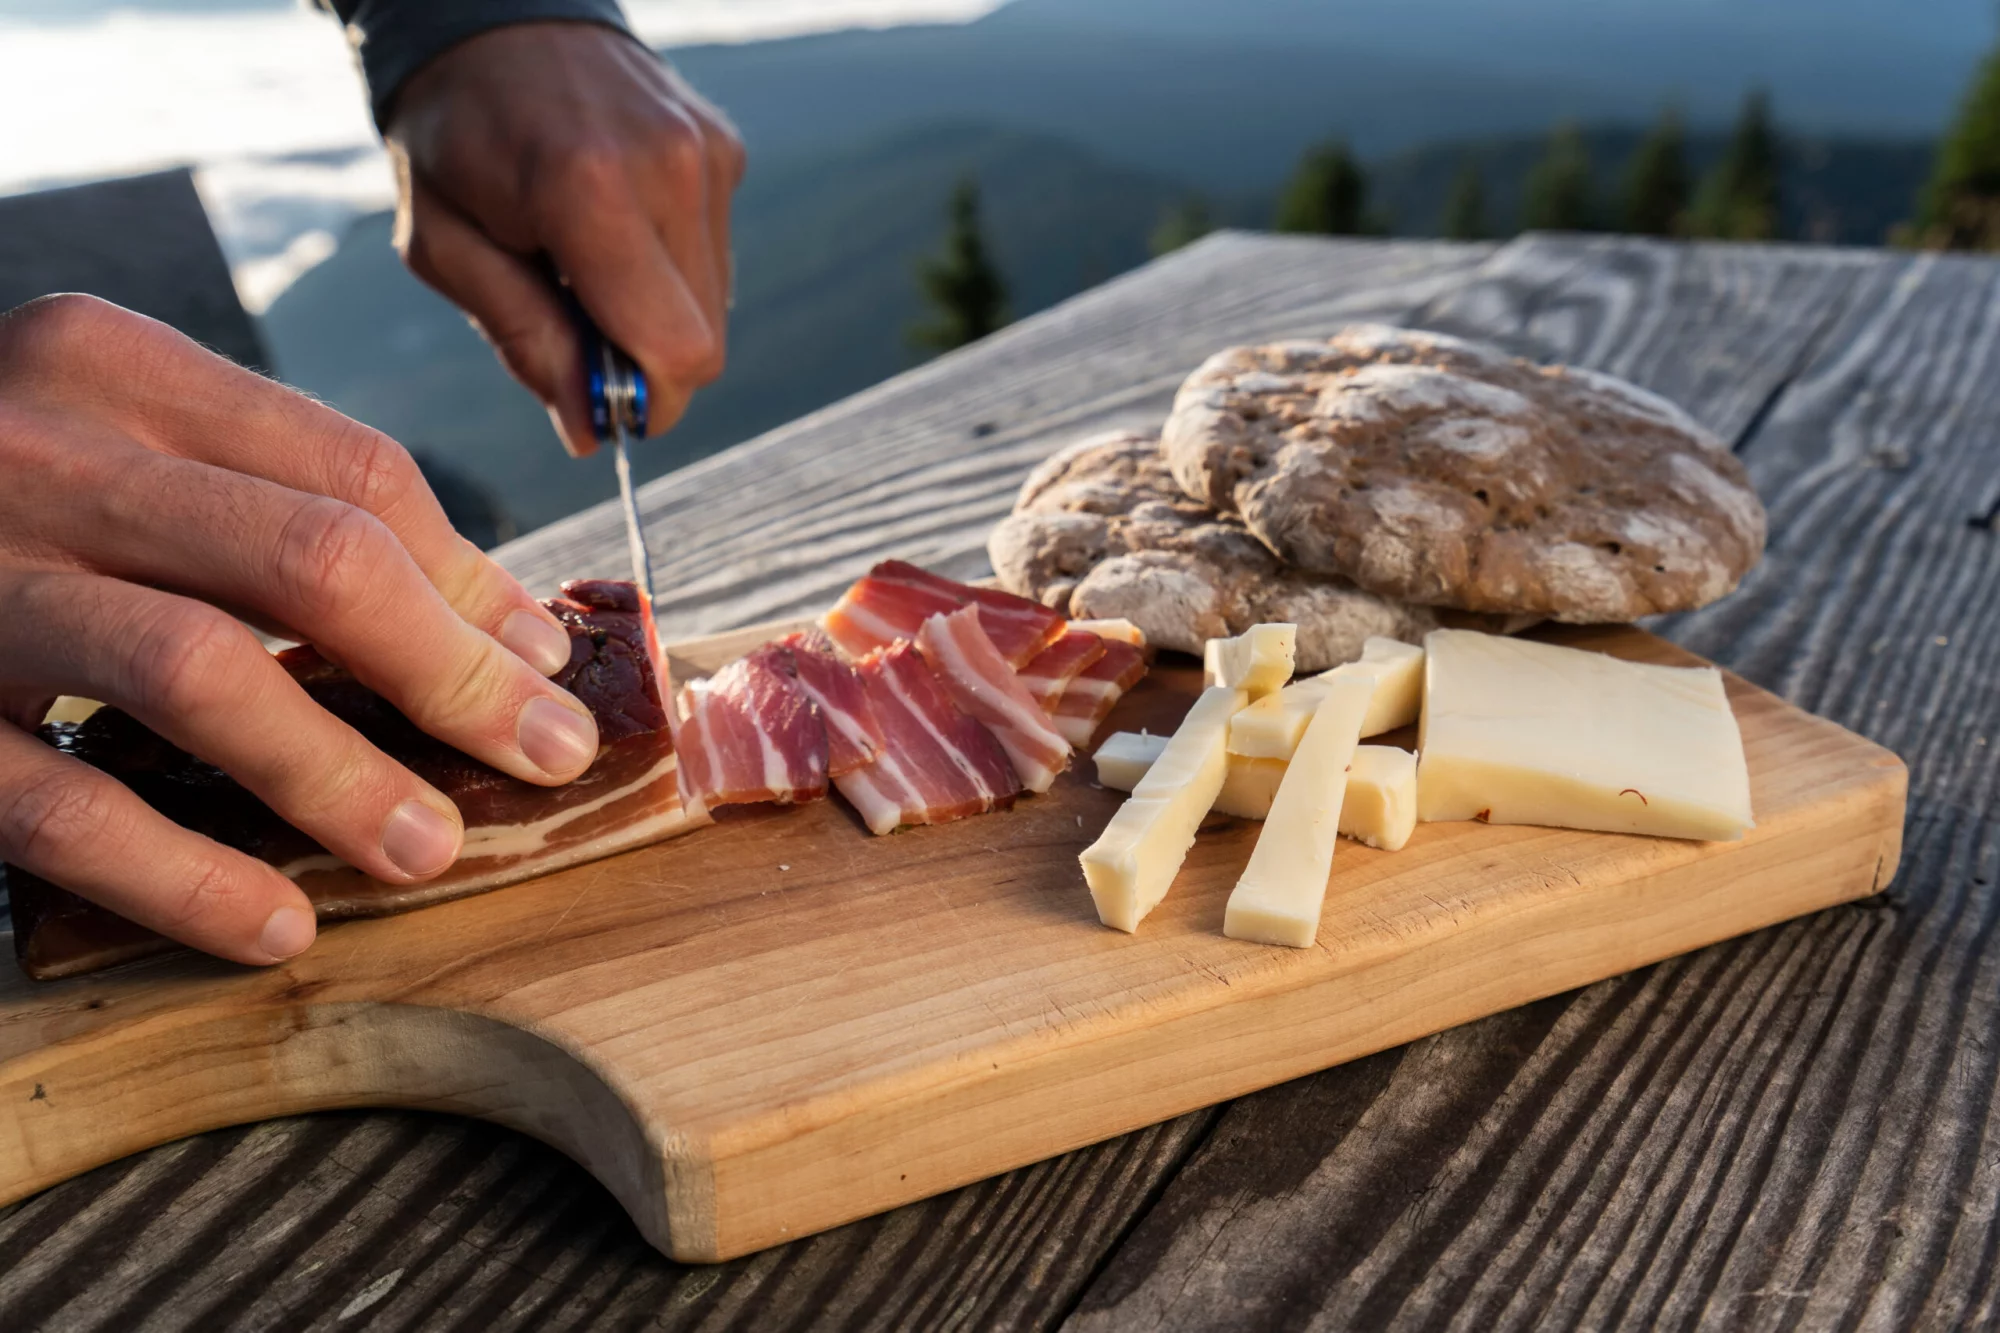 Mann skjærer opp deilig sørtyrolsk røkt bacon og ost med flatt brød liggende på et rustikt bord.